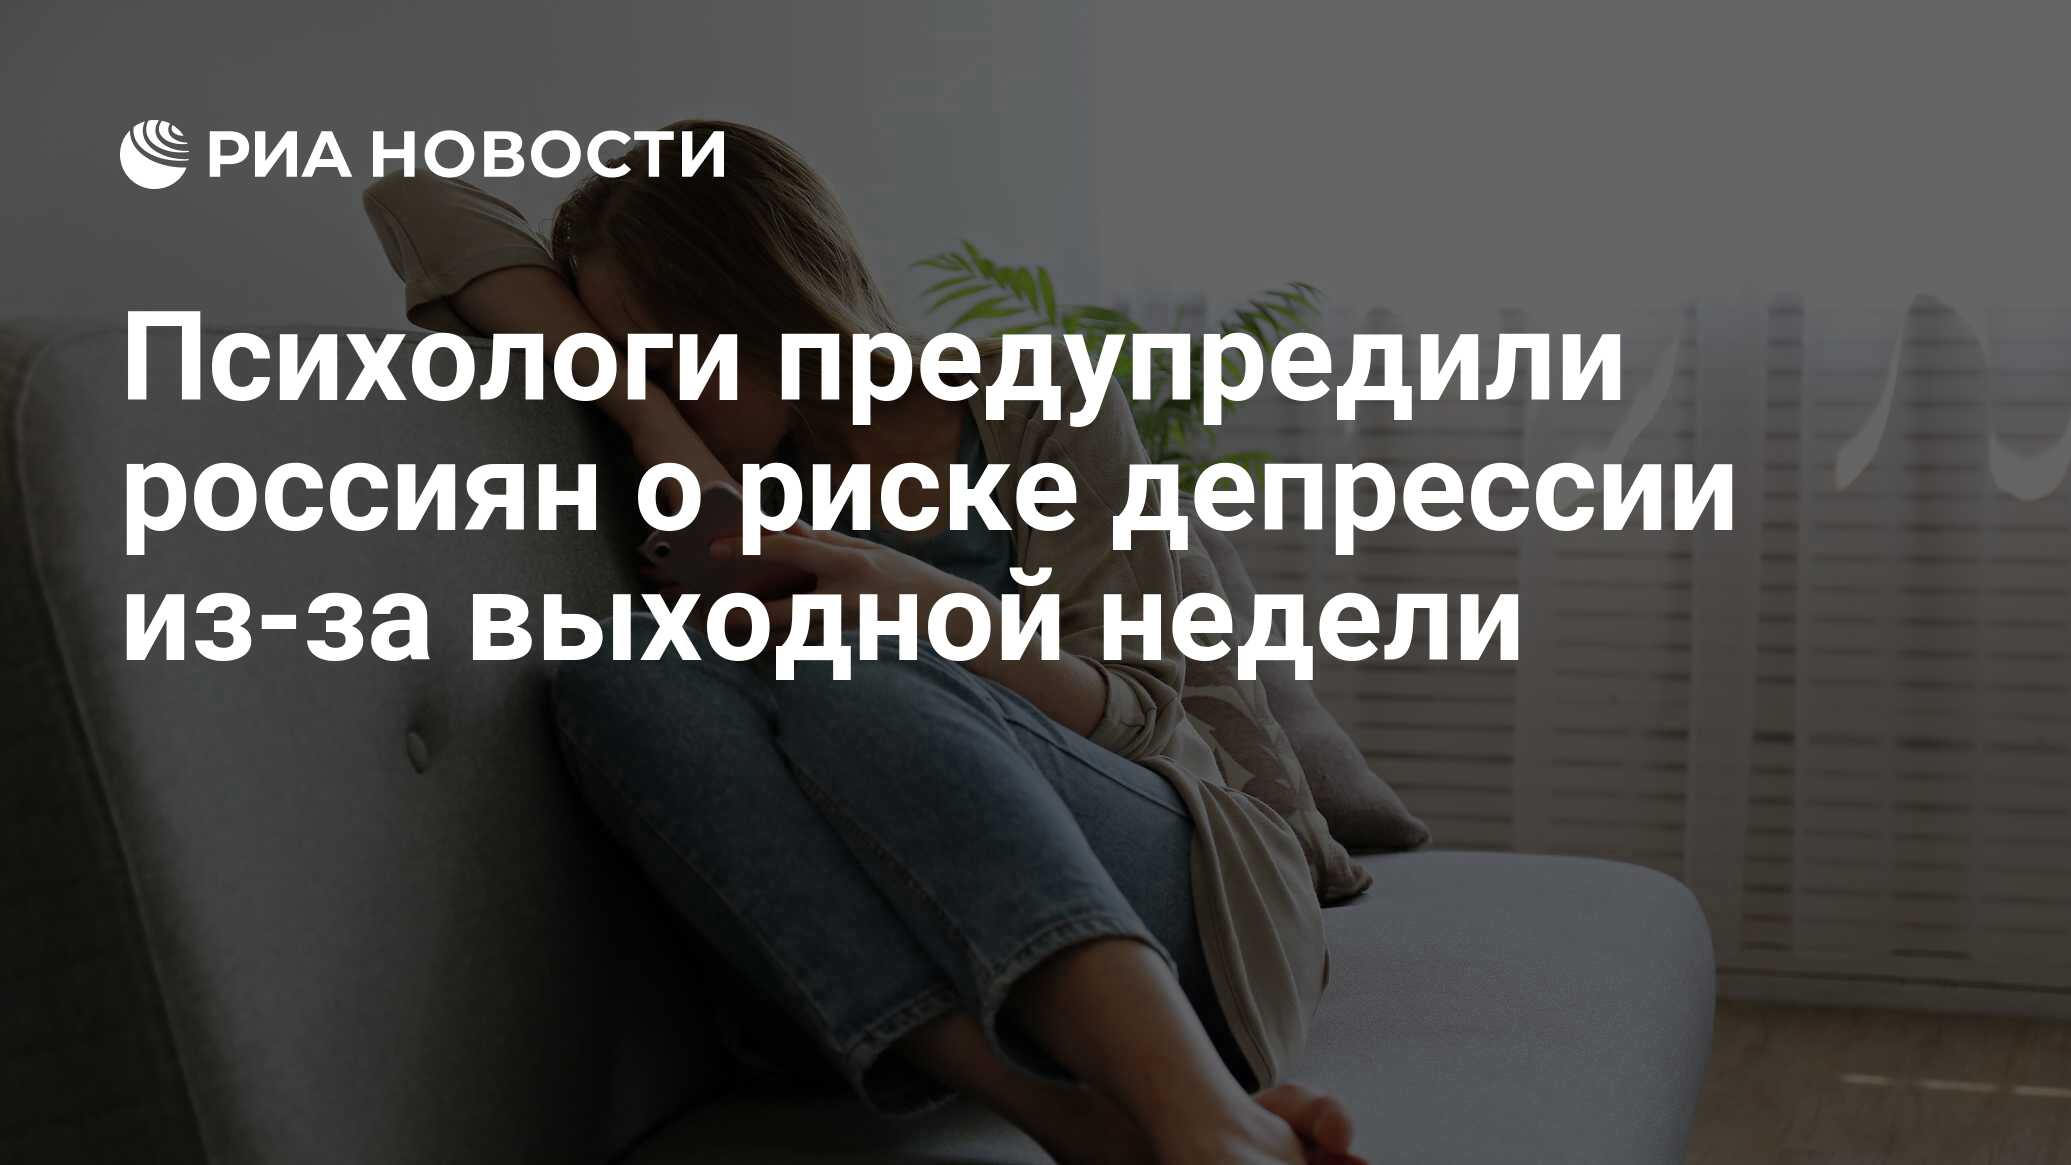 Психологи предупредили россиян о риске депрессии из-за выходной недели